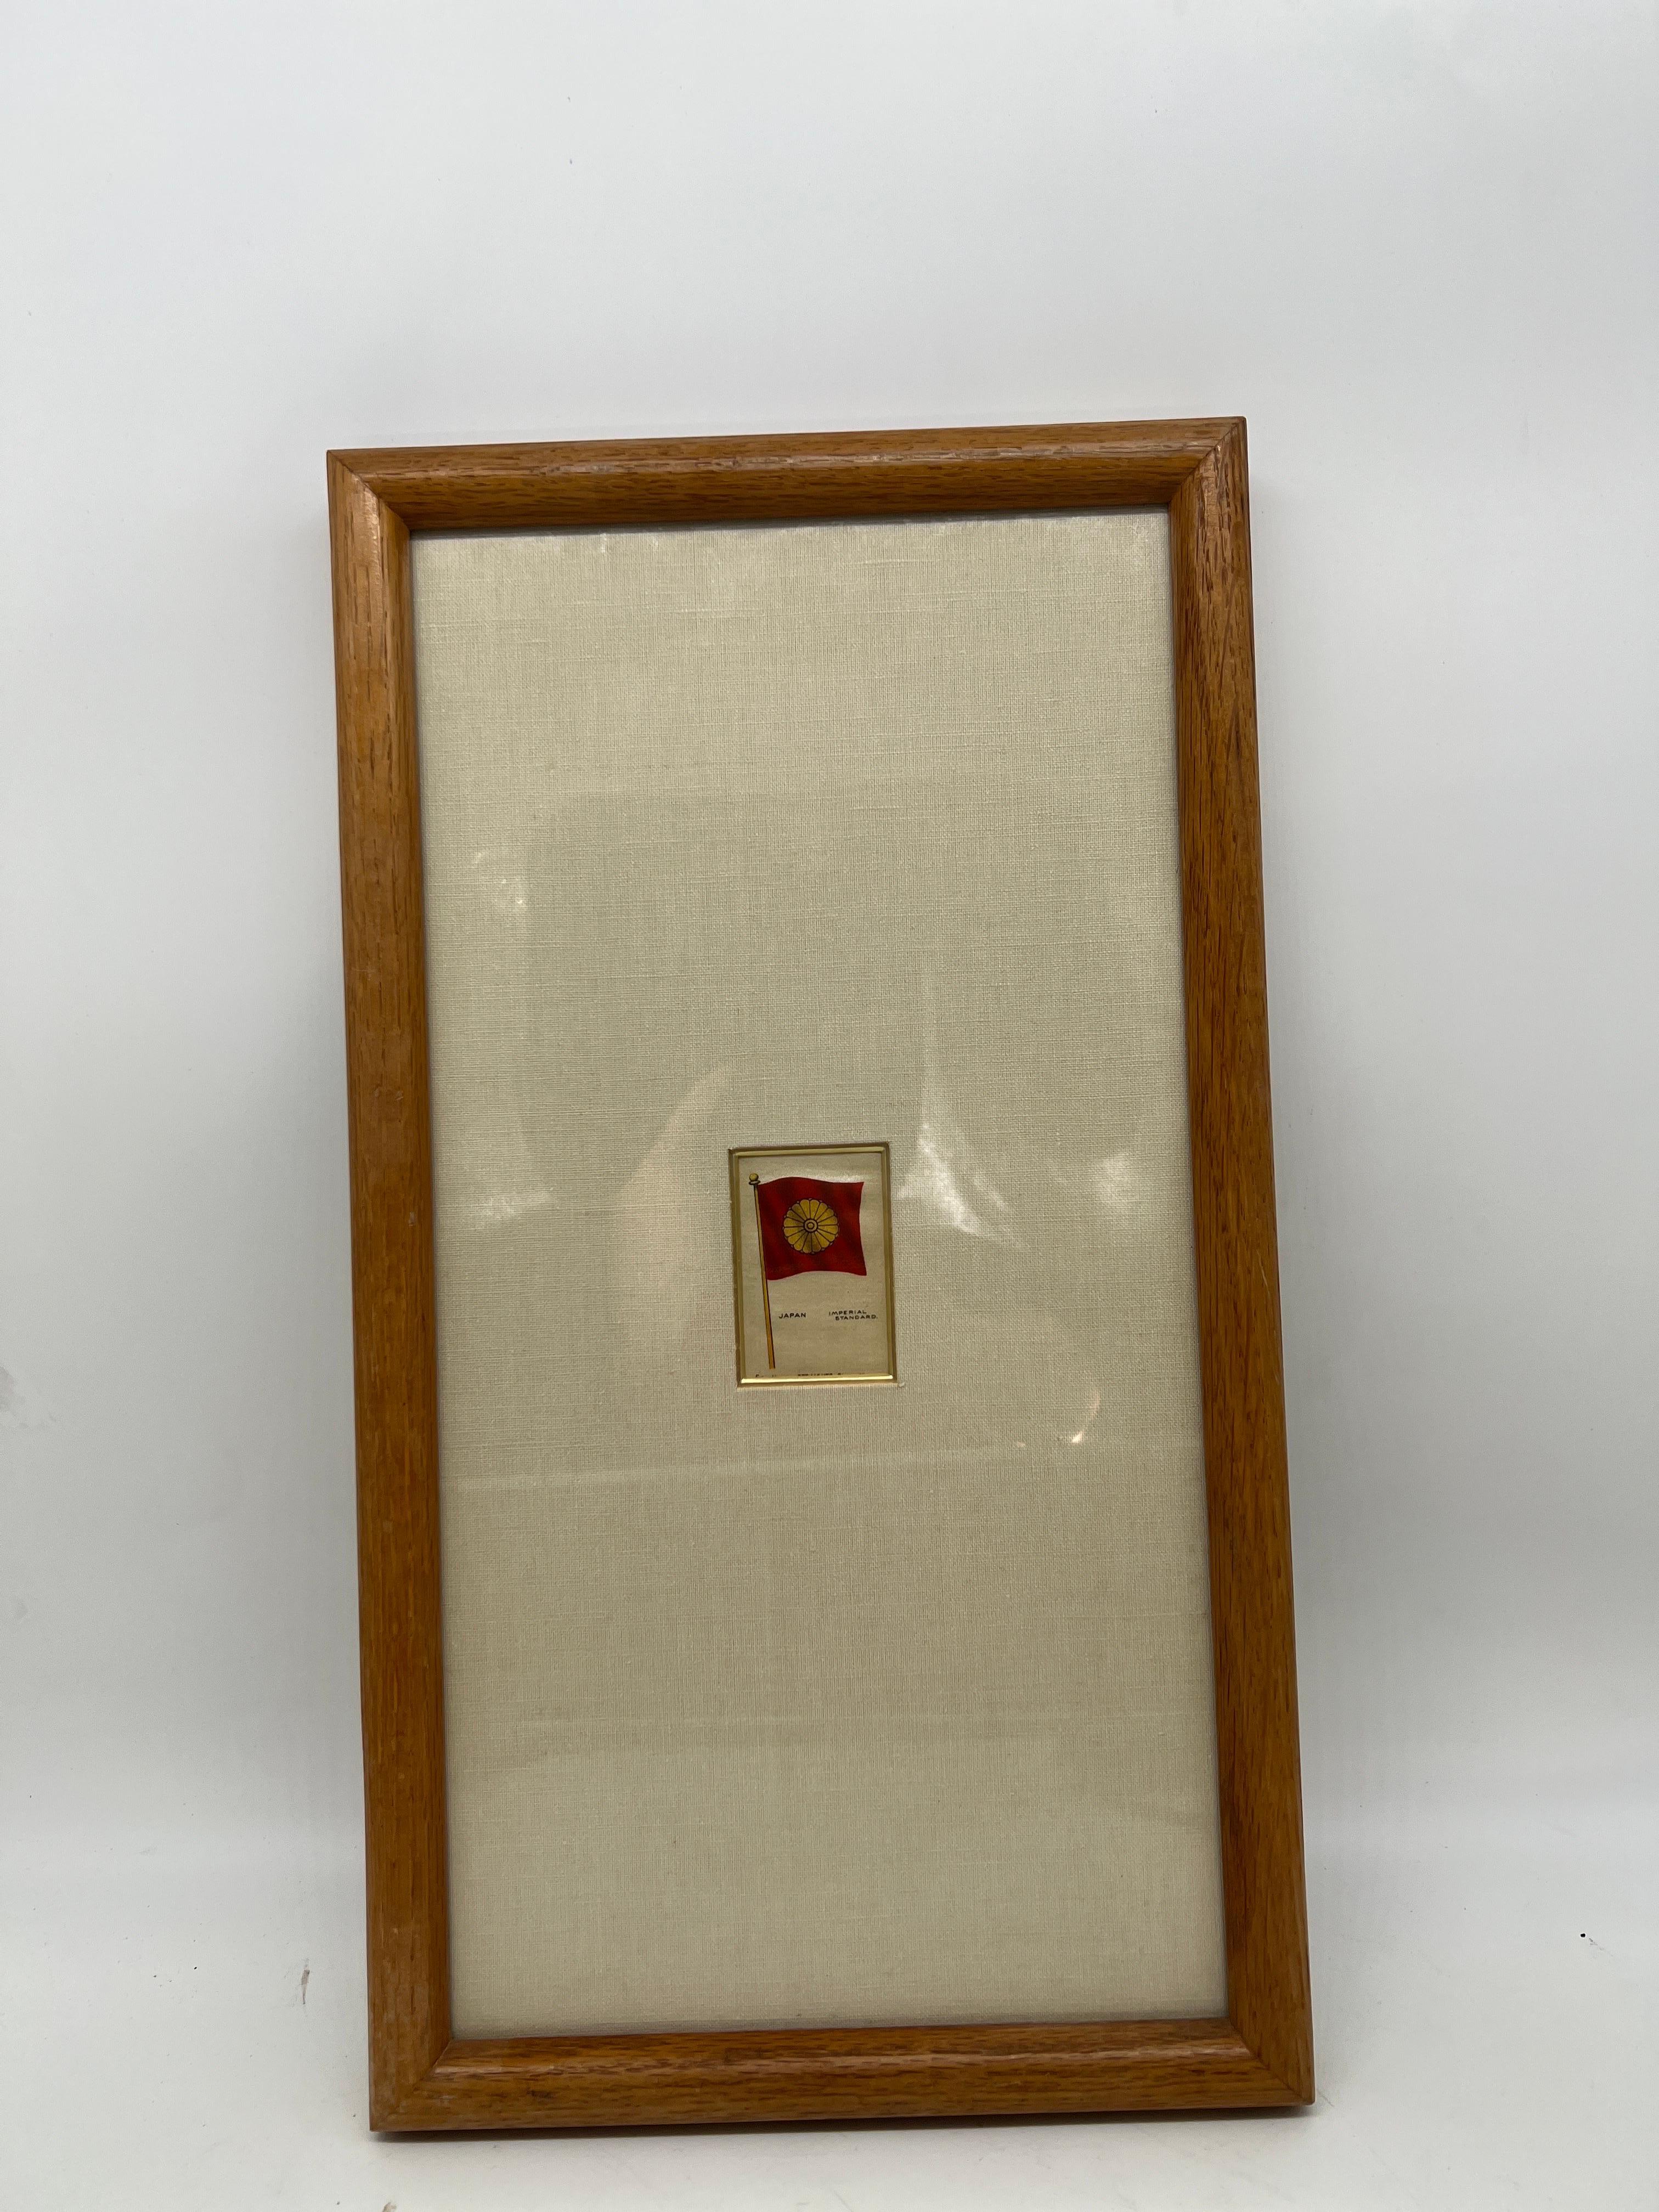 Cigarettes Sovereign, vers 1910.

Carte à cigarettes ancienne en soie encadrée, datant de 1910, représentant l'un des 126 drapeaux de pays de la série. Celui-ci met en valeur le drapeau japonais standard impérial. Dans un cadre et un passe-partout